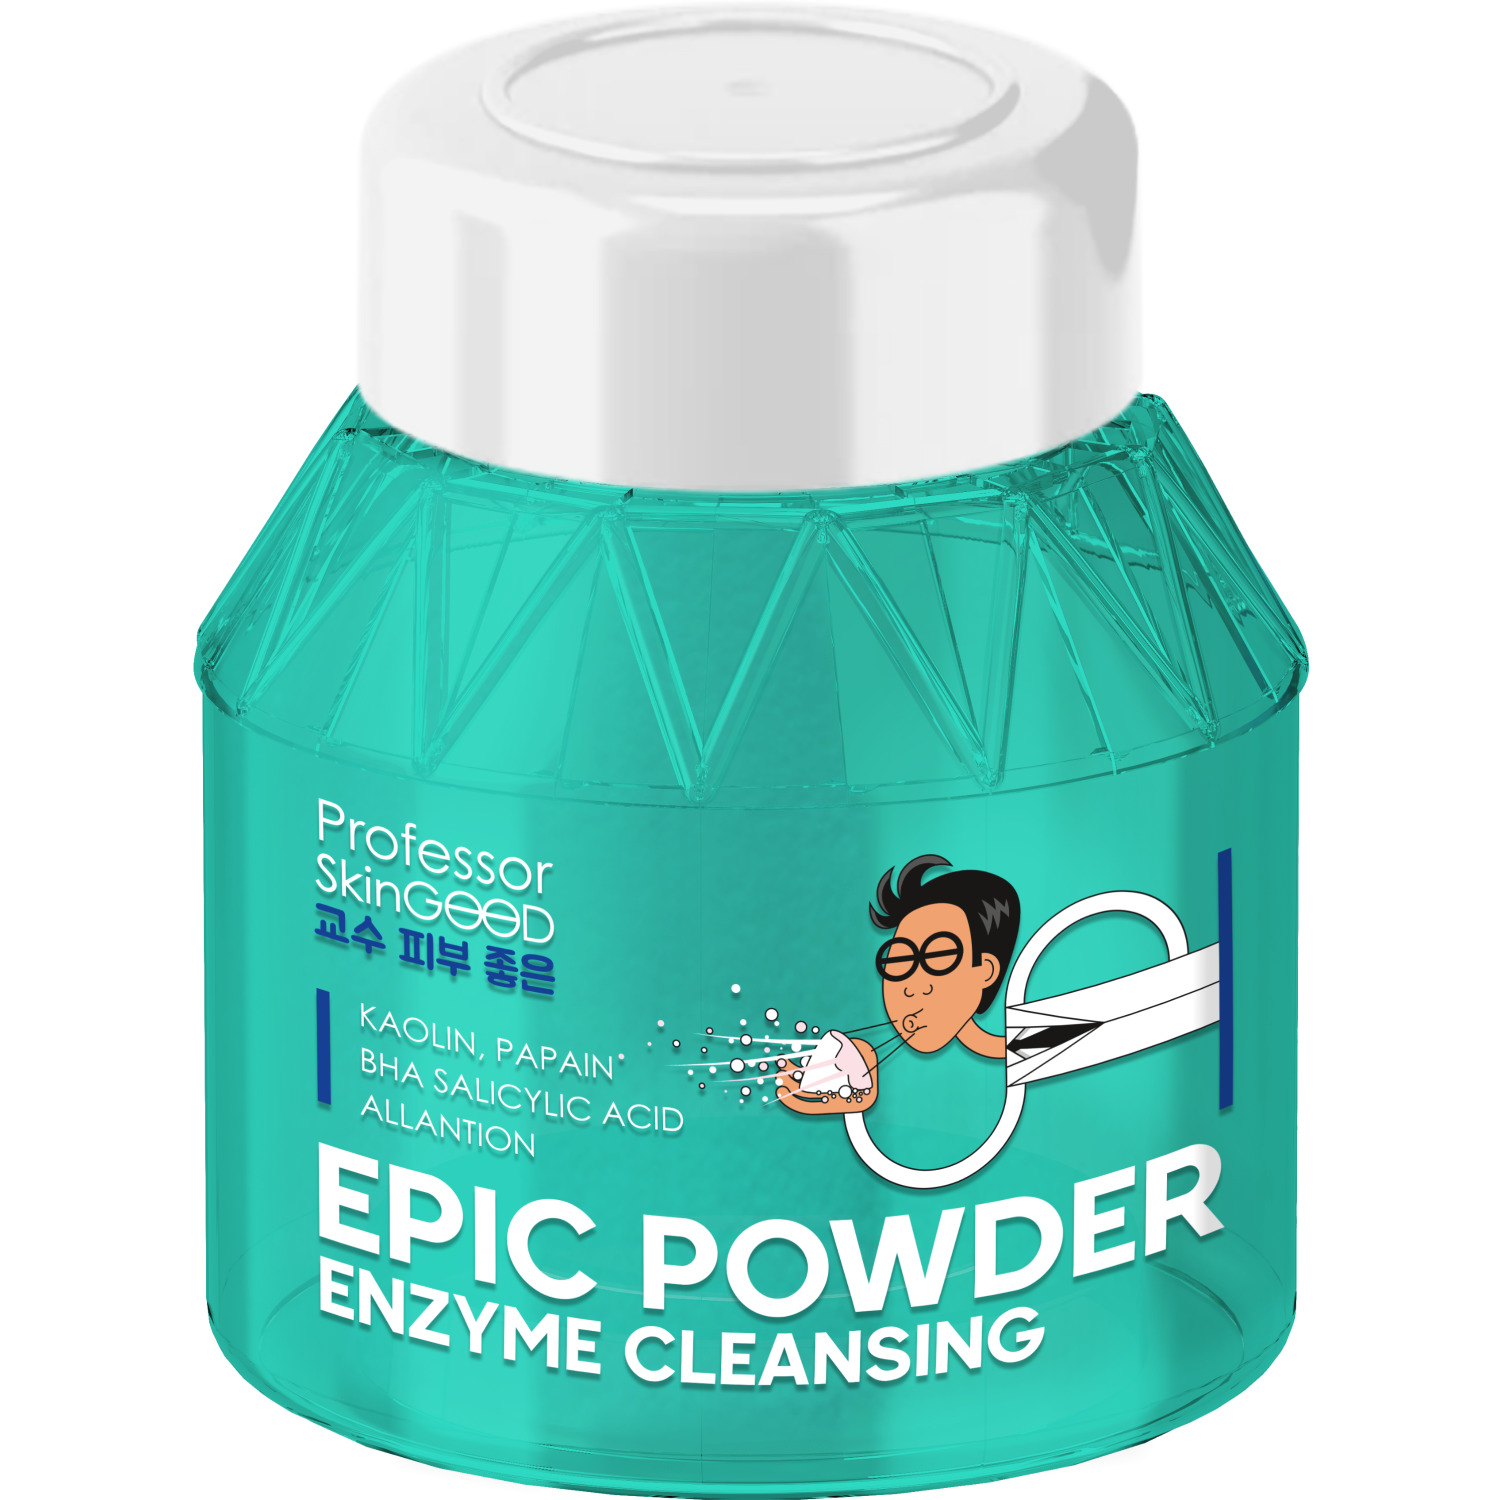 Пудра для умывания Professor SkinGOOD Epic Powder Enzyme Cleansing энзимная, 66 г пудра для умывания professor skingood epic powder enzyme cleansing энзимная 66 г